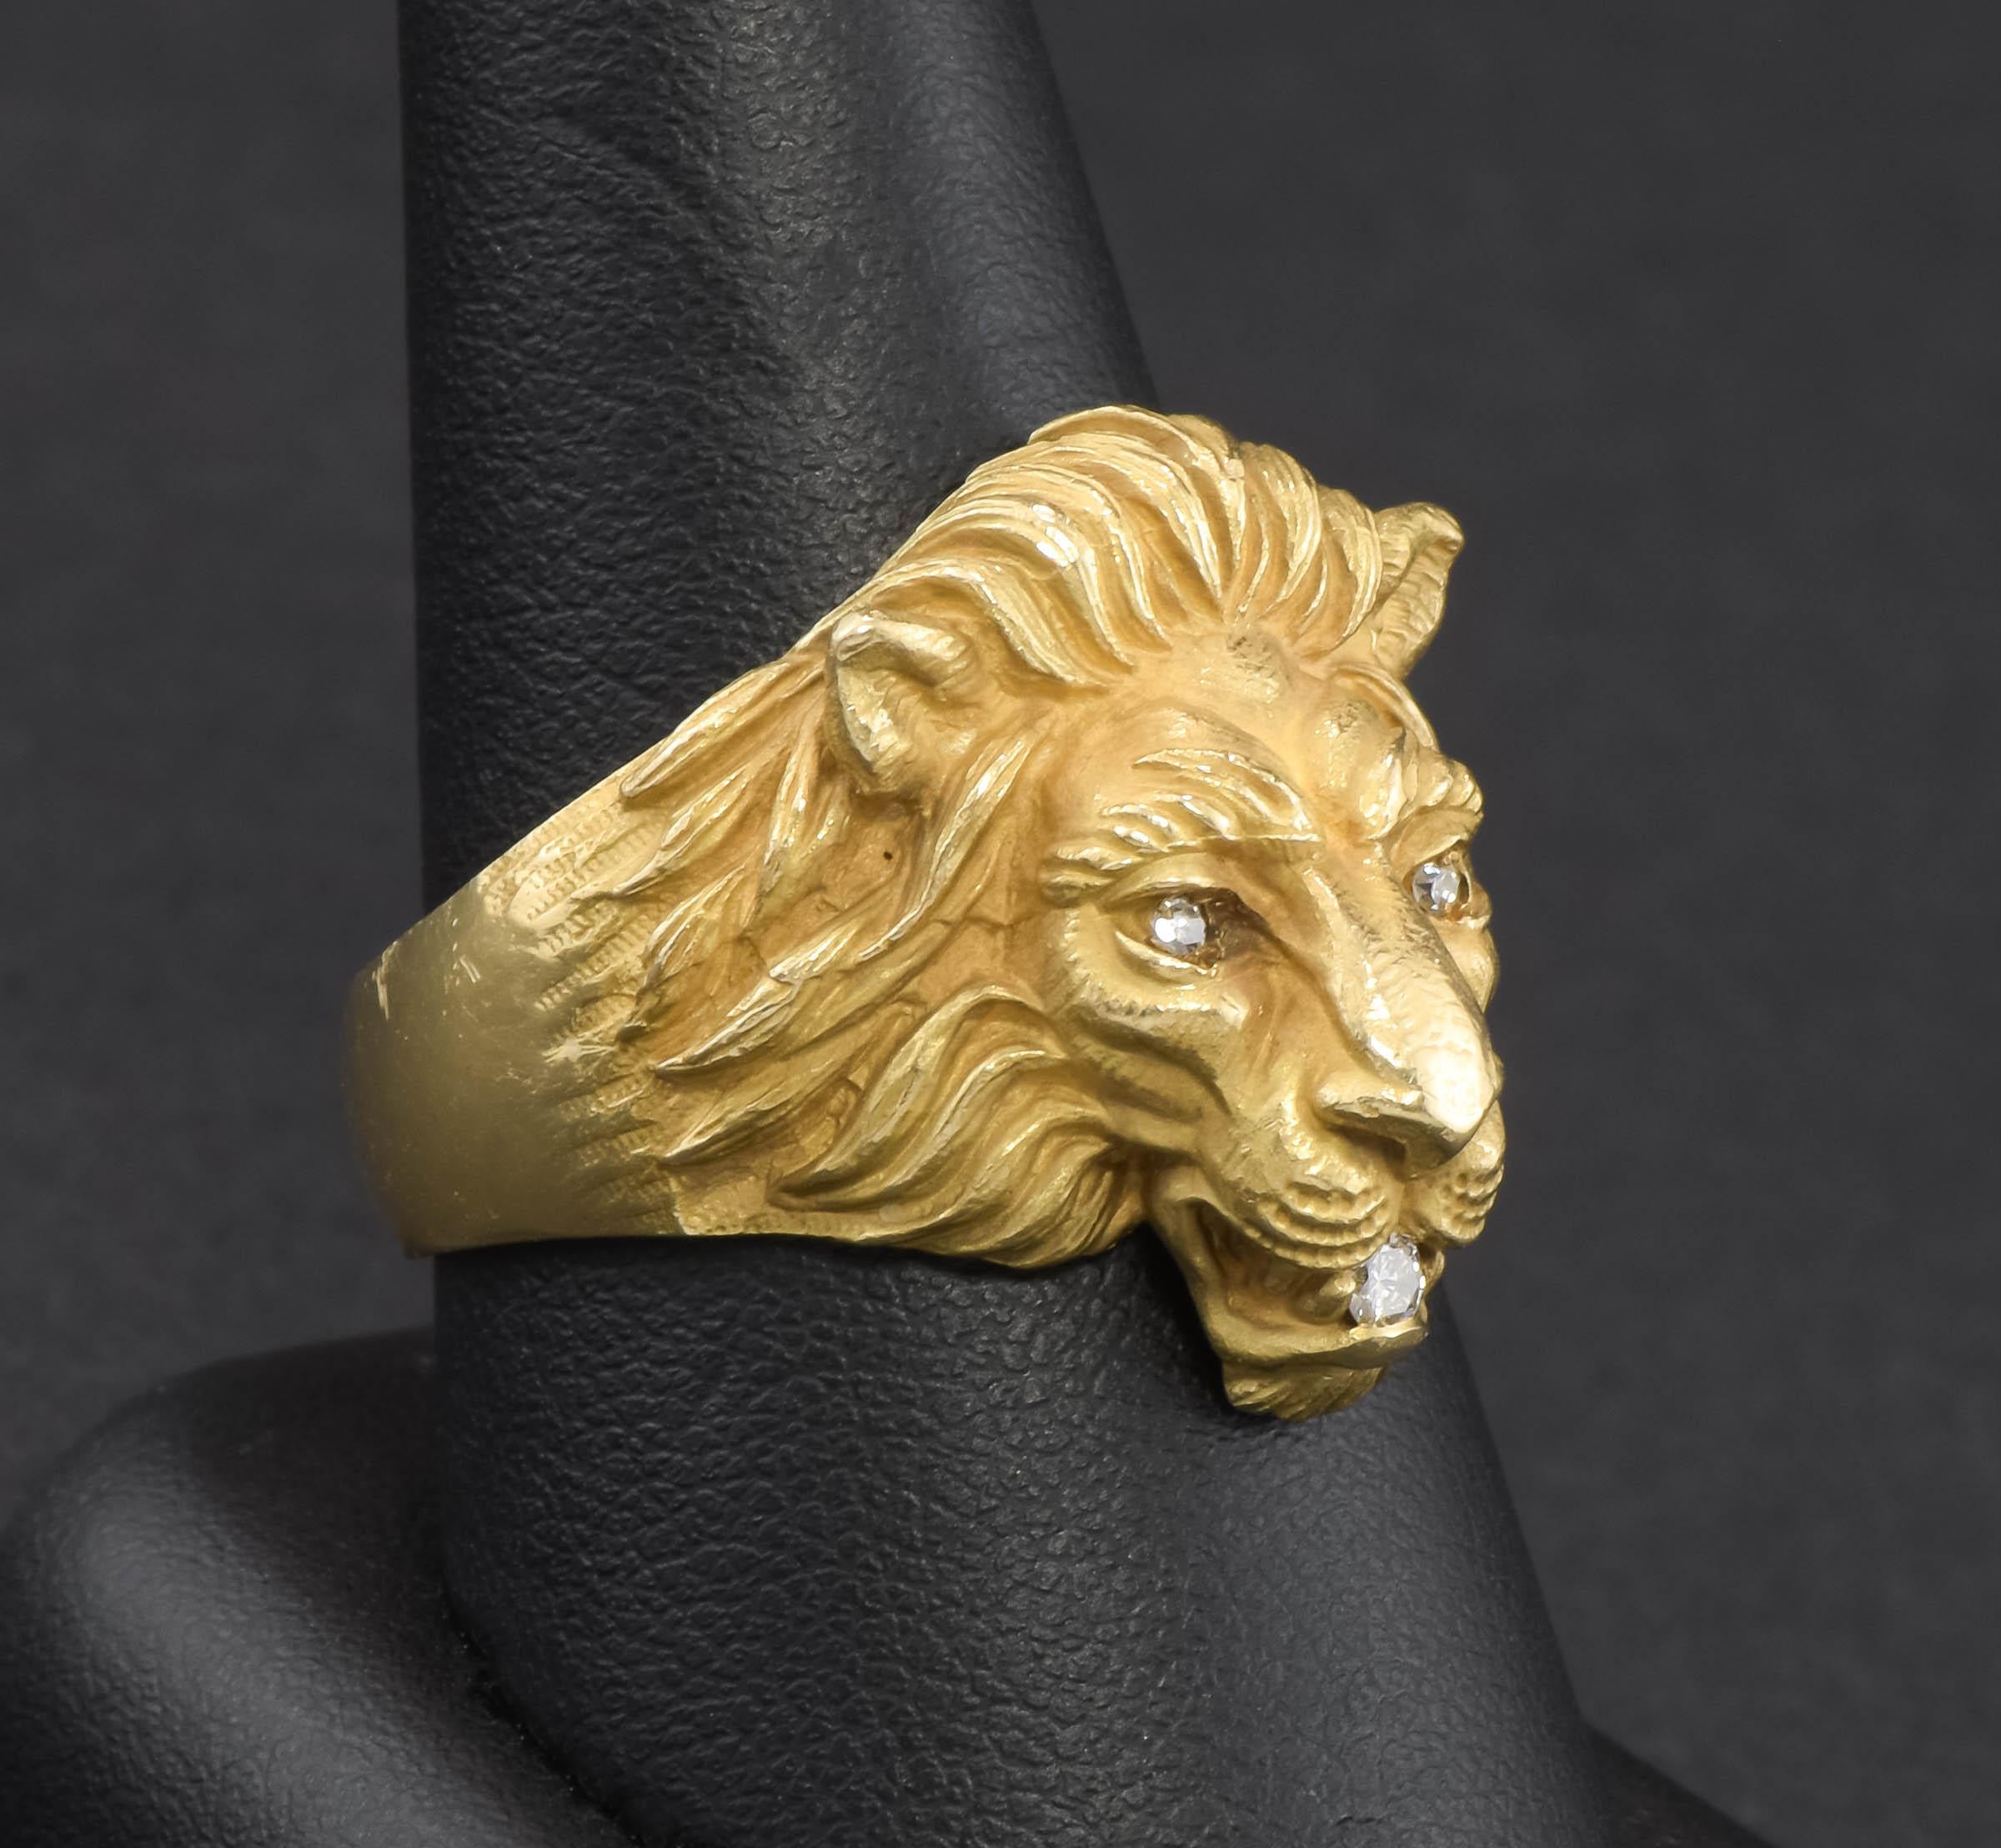 Ich freue mich, einen der originalen goldenen Löwenringe von Baumstein Feders aus den 1950er Jahren anbieten zu können.  Viele Hersteller haben im Laufe der Jahre minderwertige Kopien dieses prächtigen Löwen hergestellt, und wenn man die wunderbaren